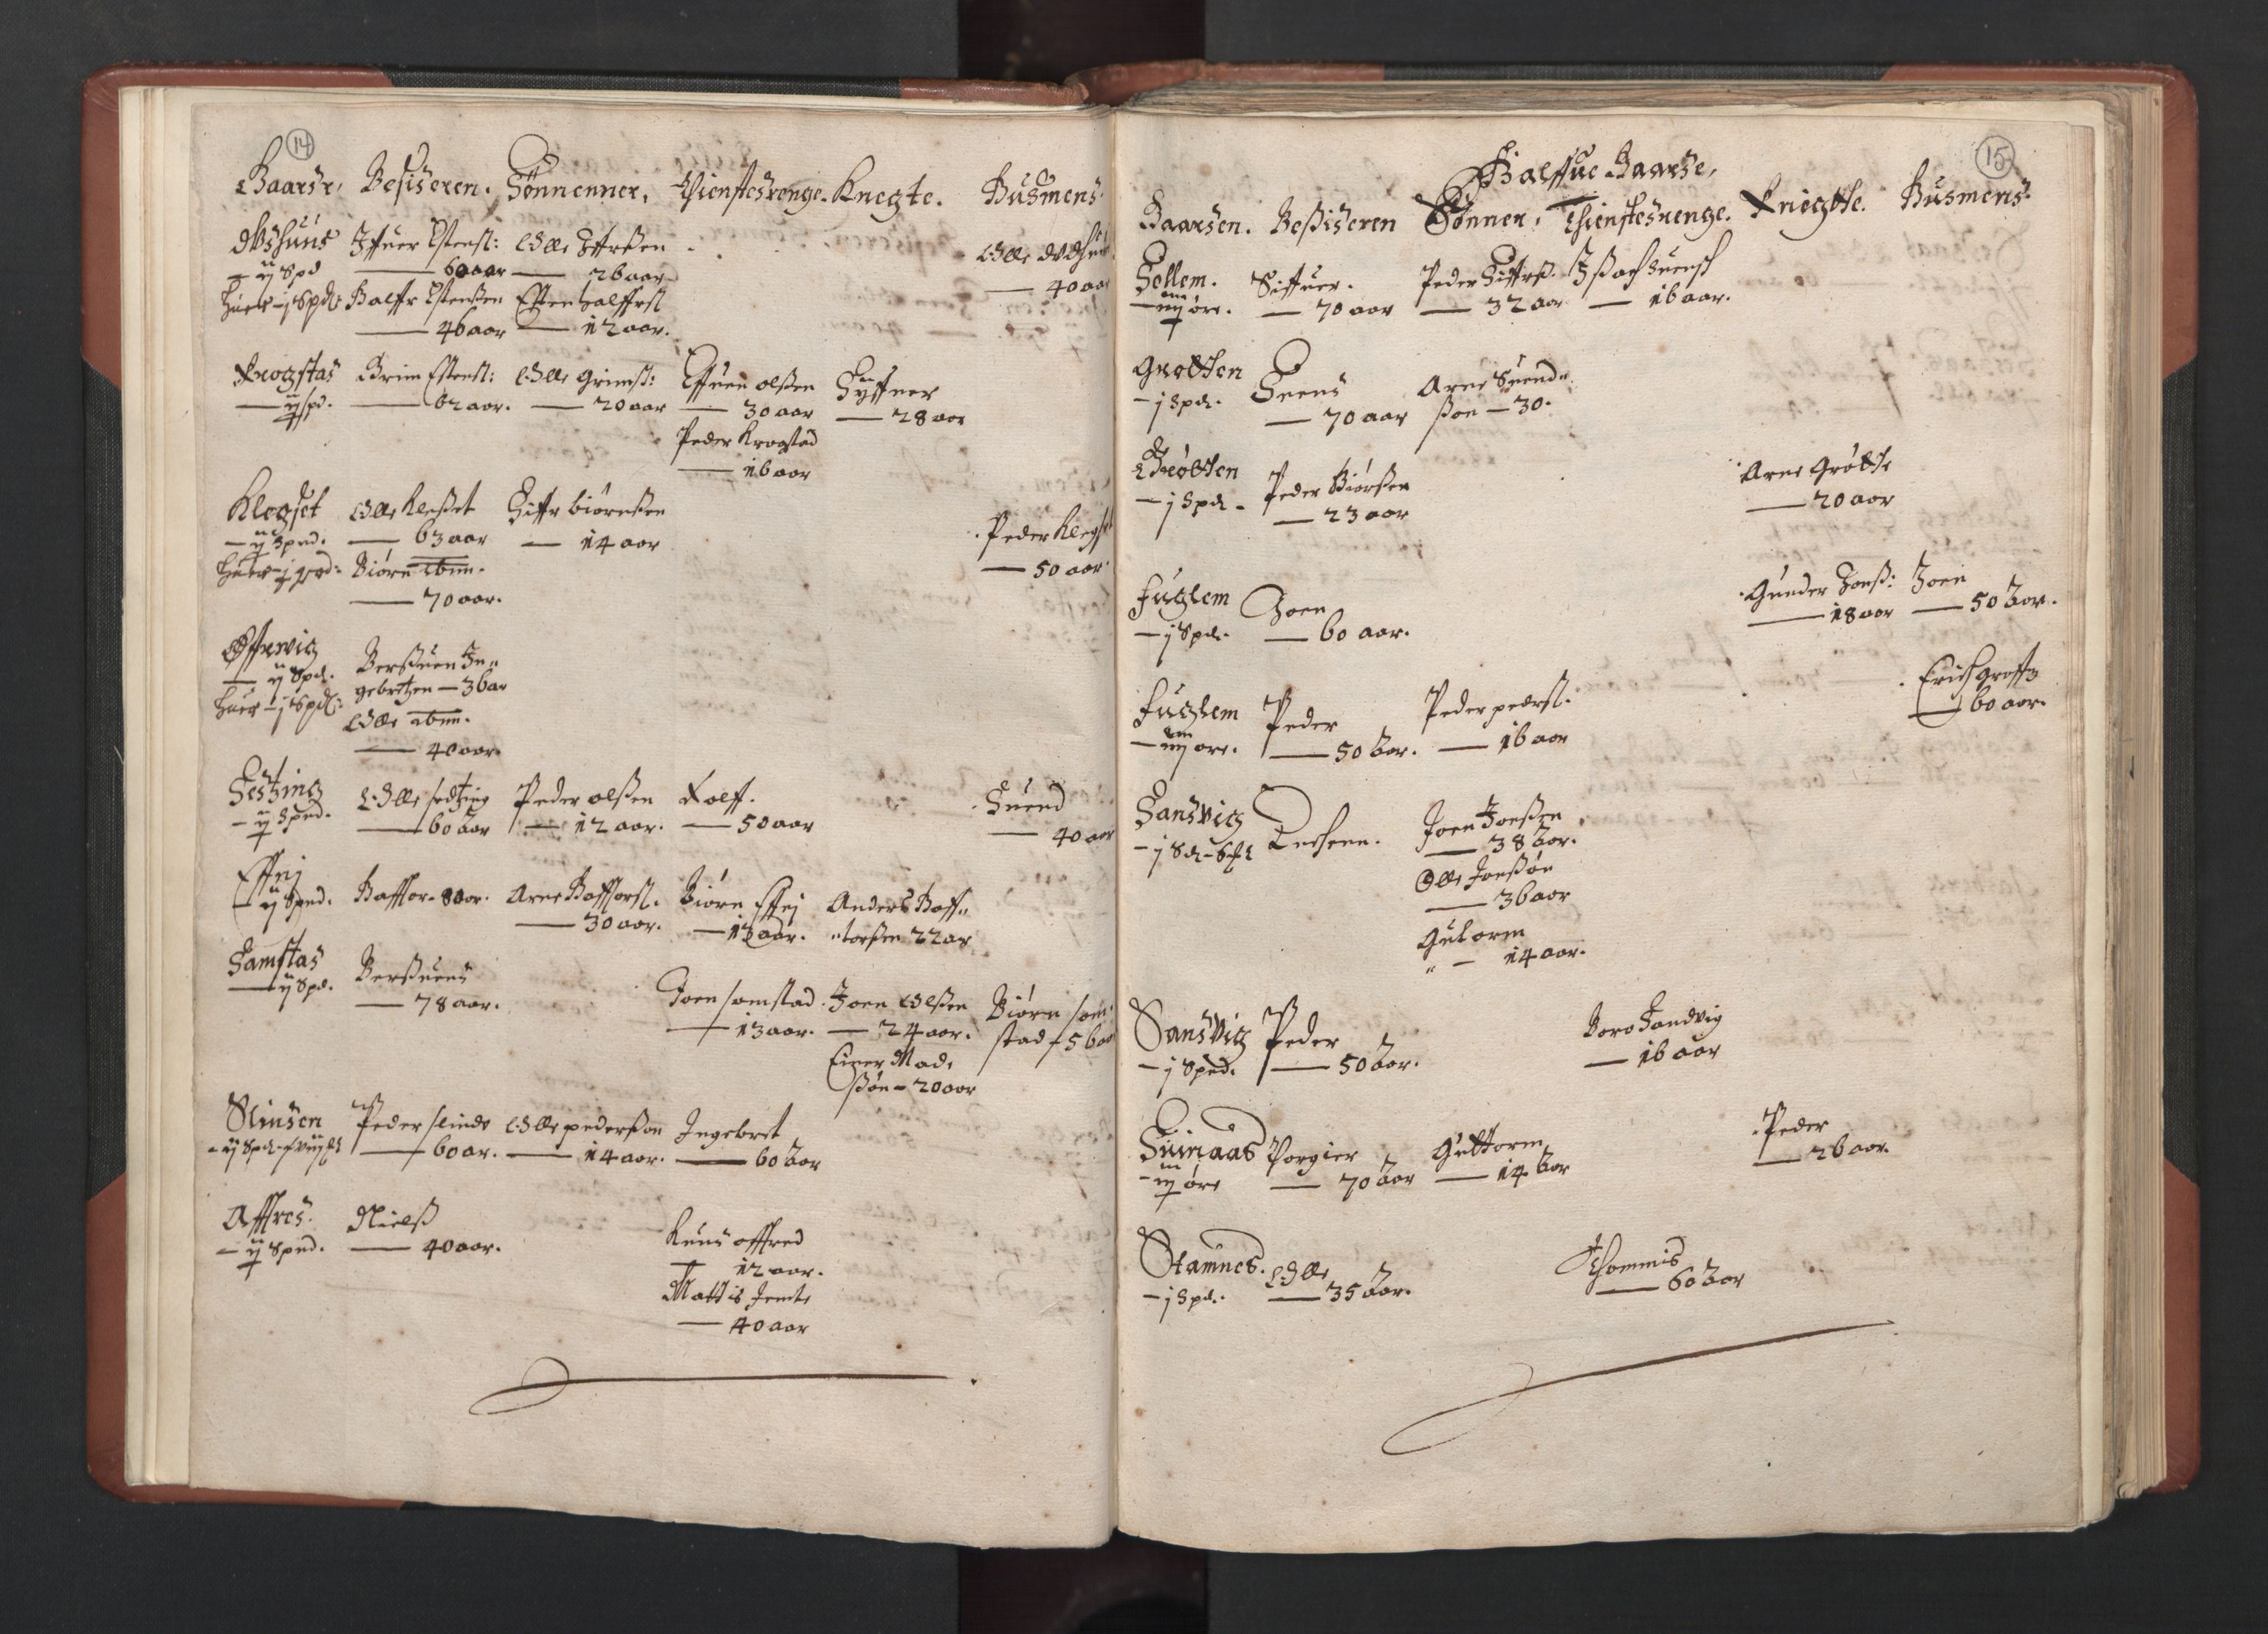 RA, Bailiff's Census 1664-1666, no. 19: Fosen fogderi, Inderøy fogderi, Selbu fogderi, Namdal fogderi and Stjørdal fogderi, 1664-1665, p. 14-15